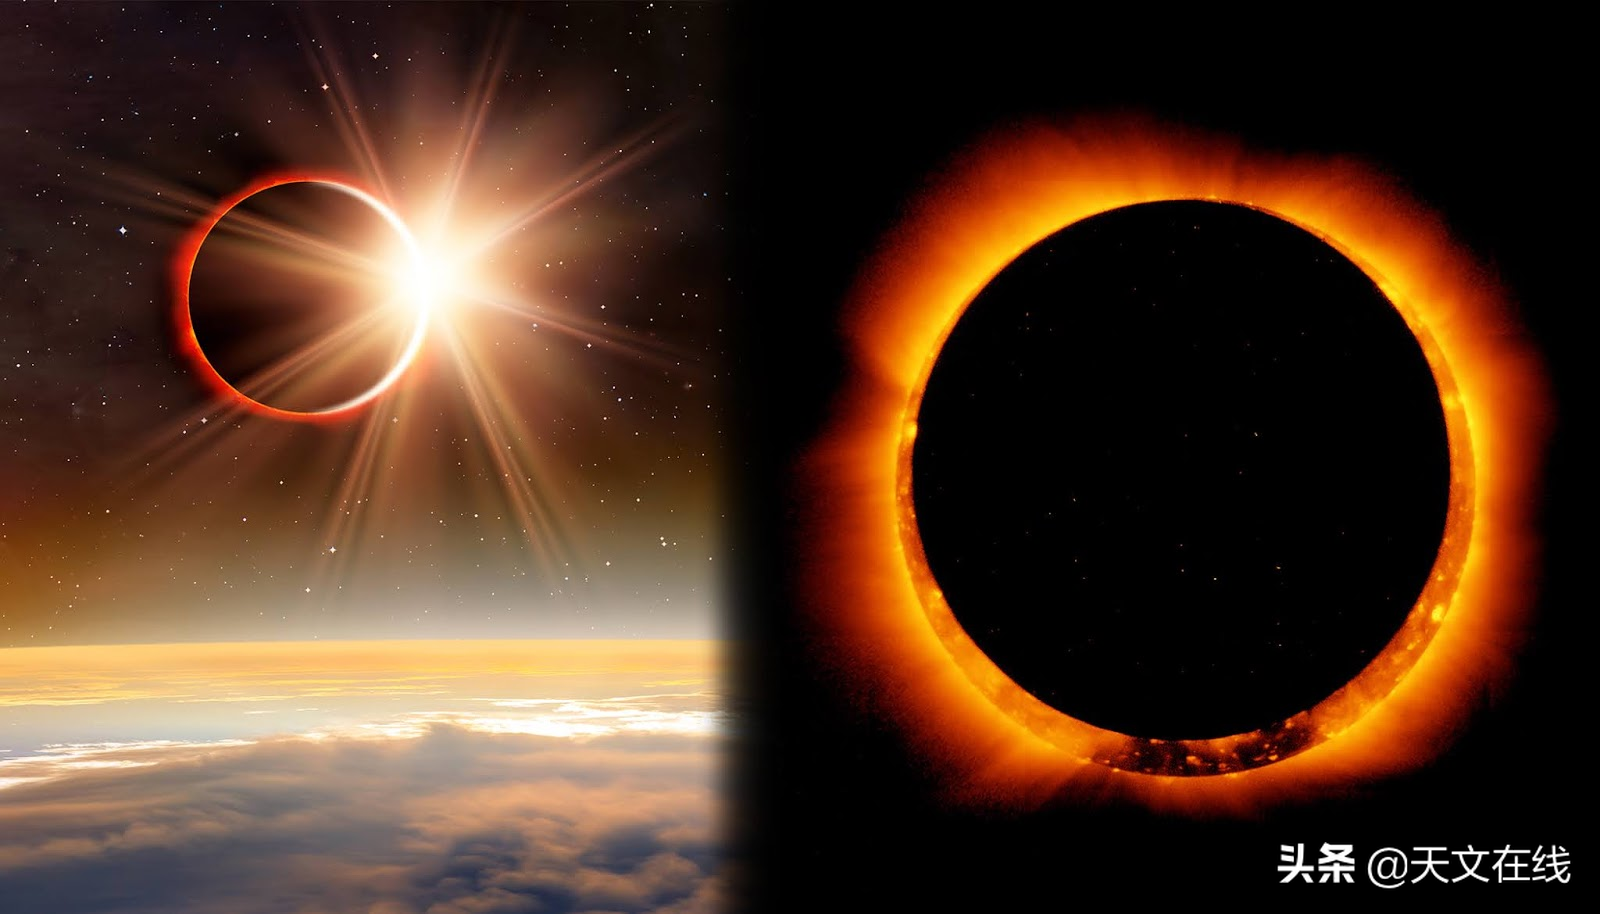 日环食和日全食的区别是什么，日食三种现象示意图和区别